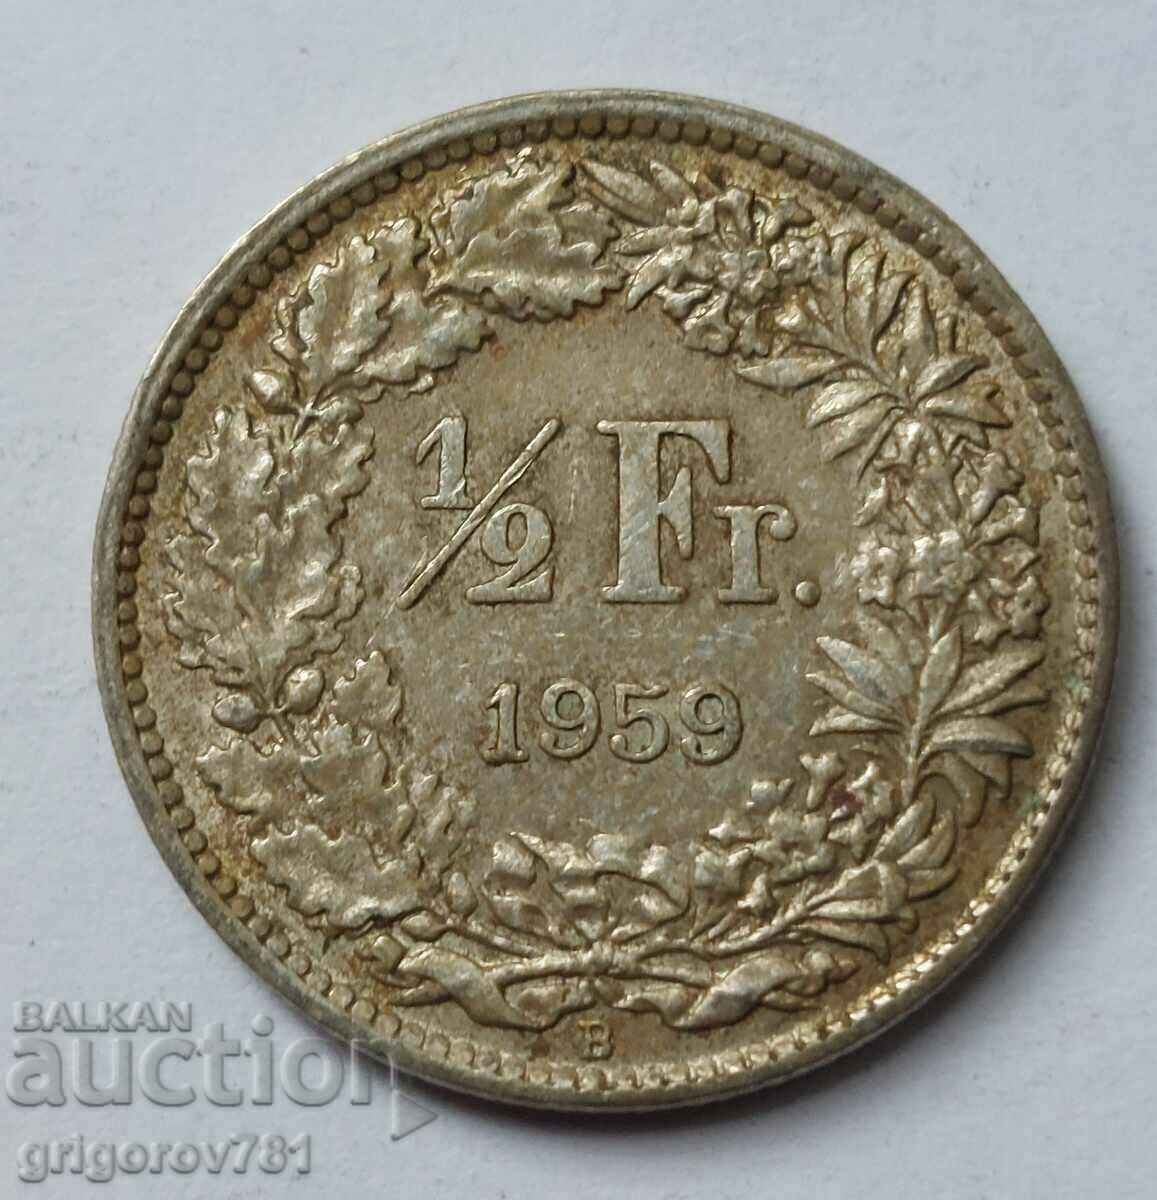 1/2 франк сребро Швейцария 1959 B - сребърна монета #50